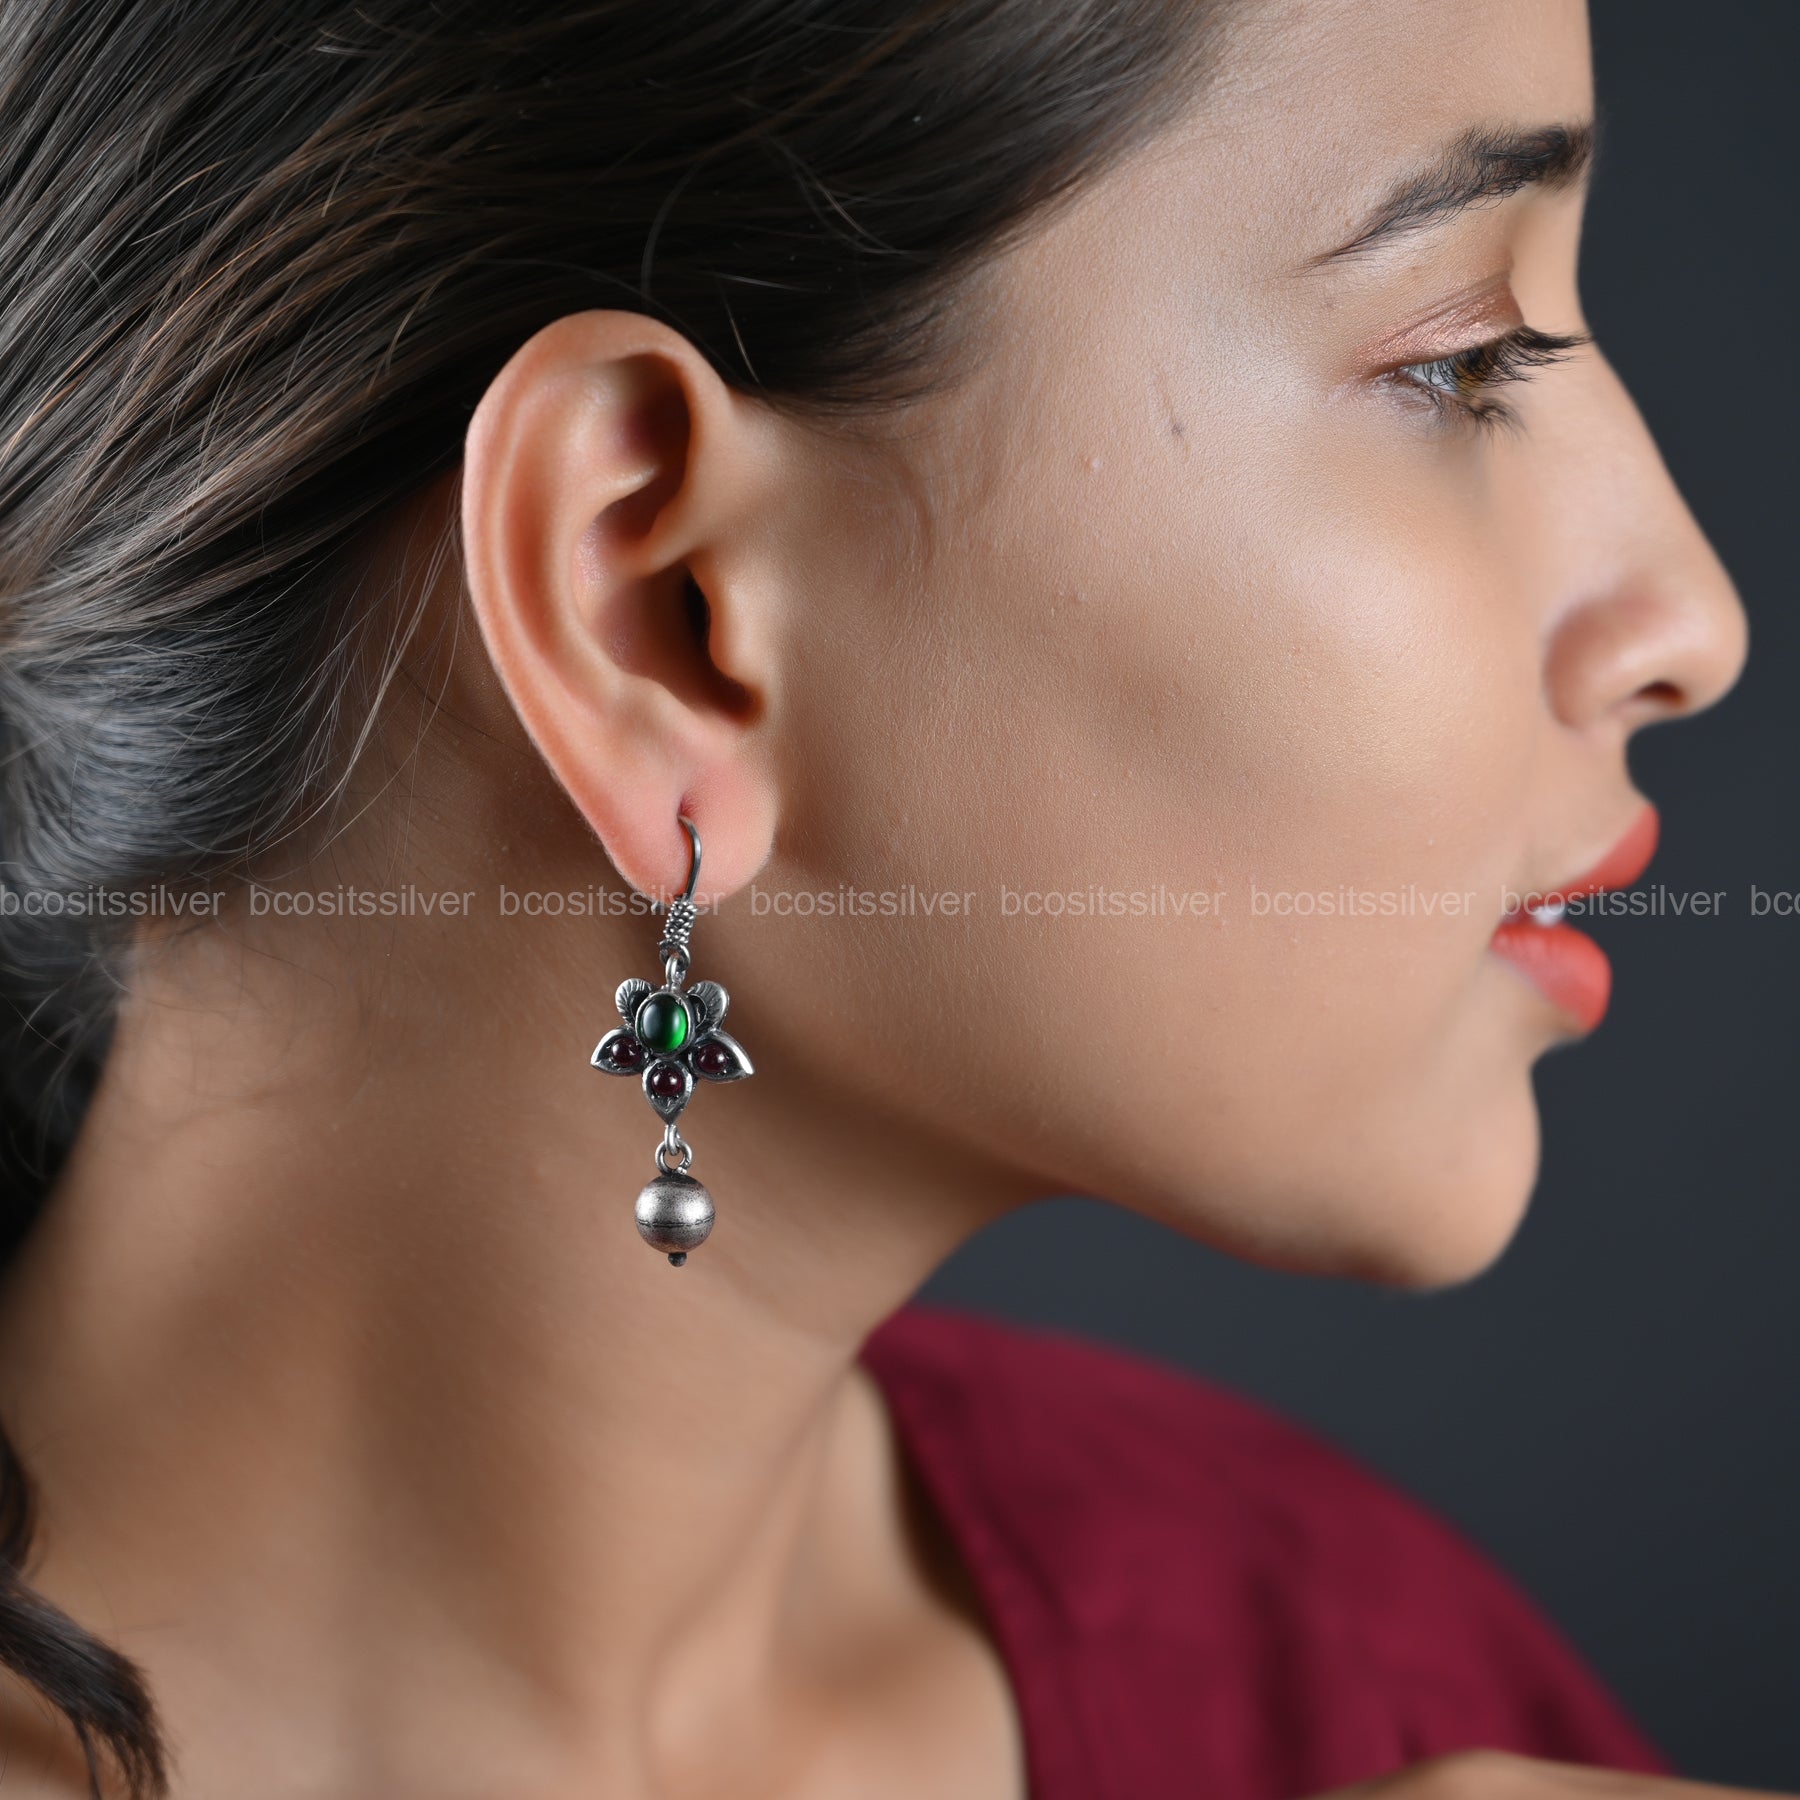 Oxidized Earring - 1112